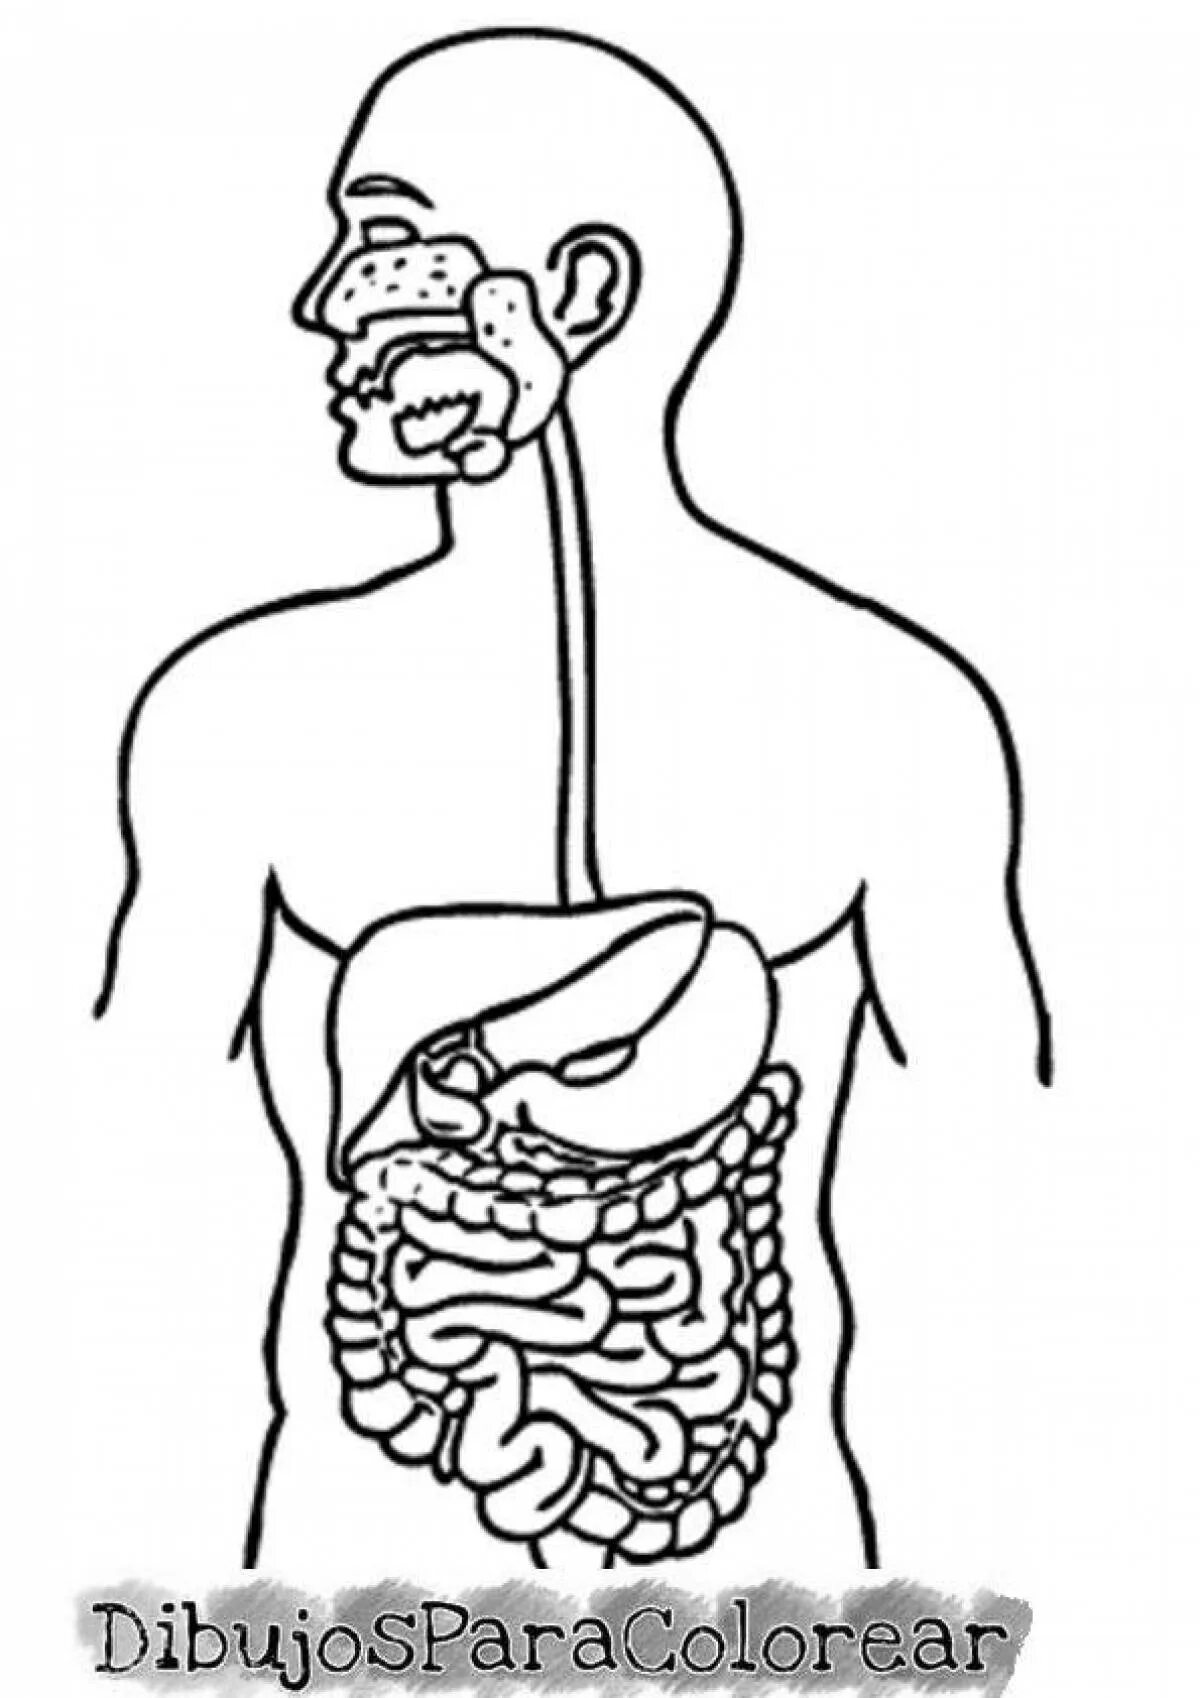 Печатать органы. Пищеварительная система человека. Строение органов пищеварения. Пищеварительные органы человека. Пищеварительная система человека схема.